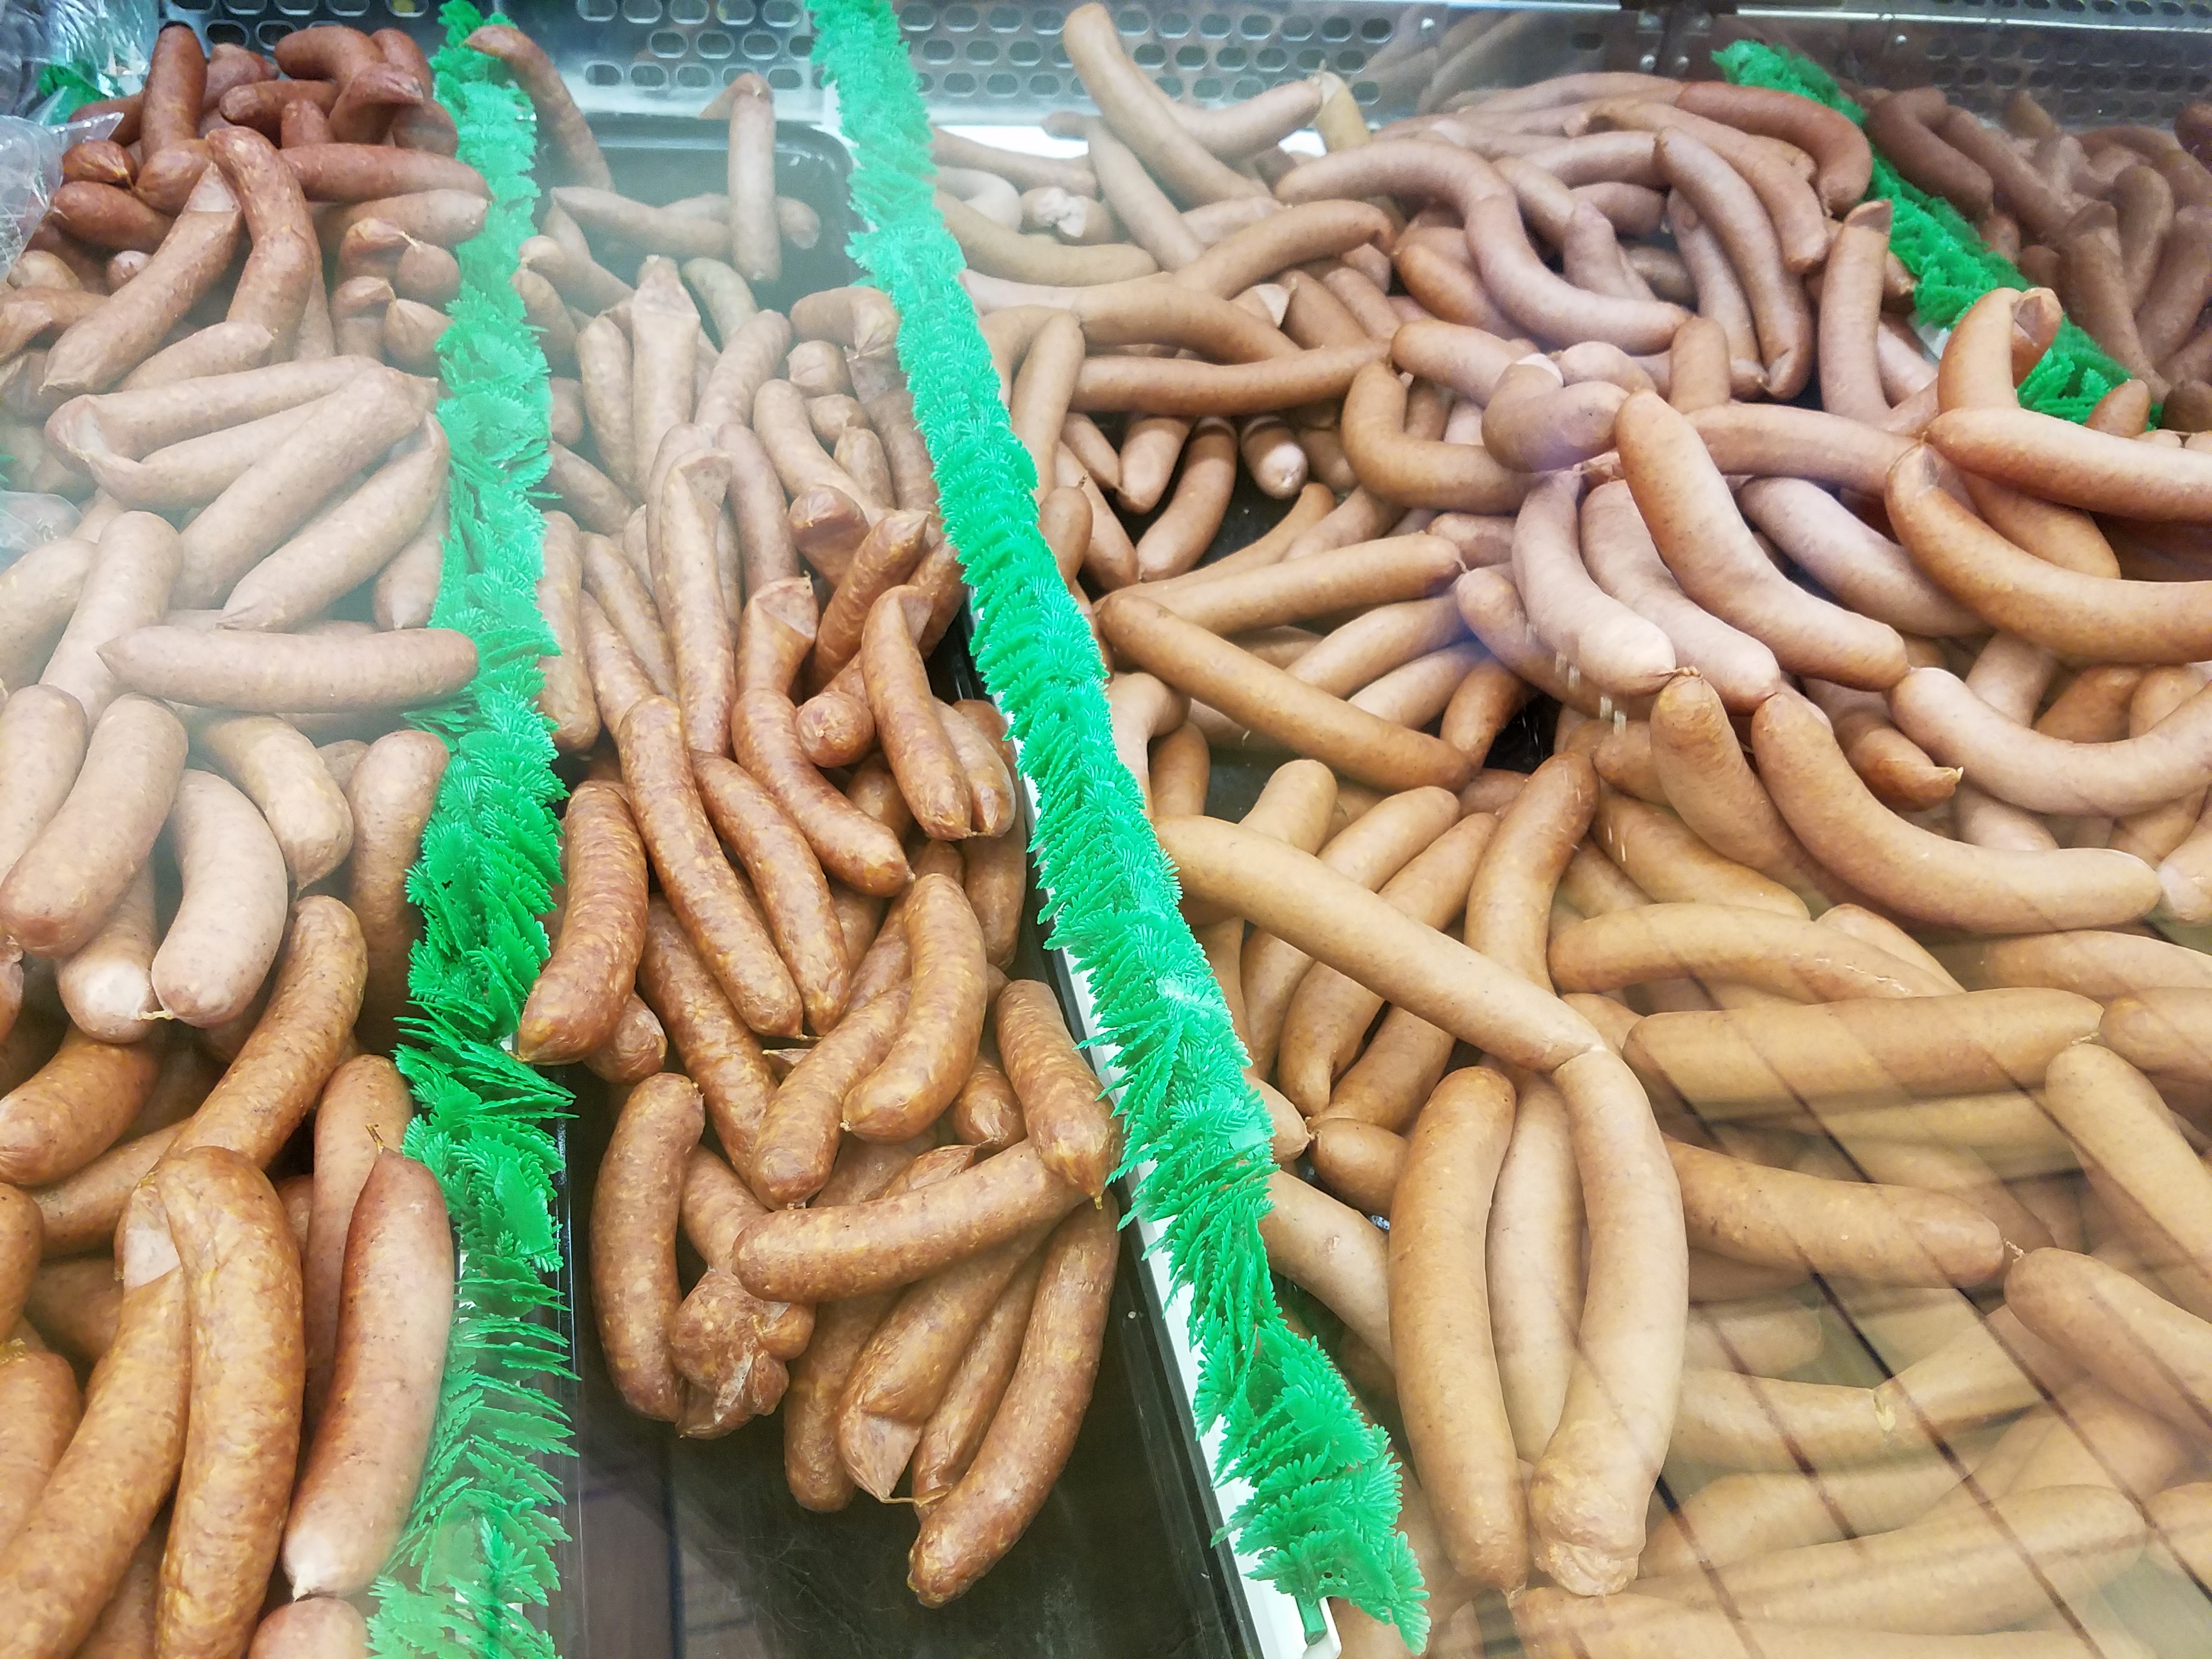 Wieners-hotdogs.jpg